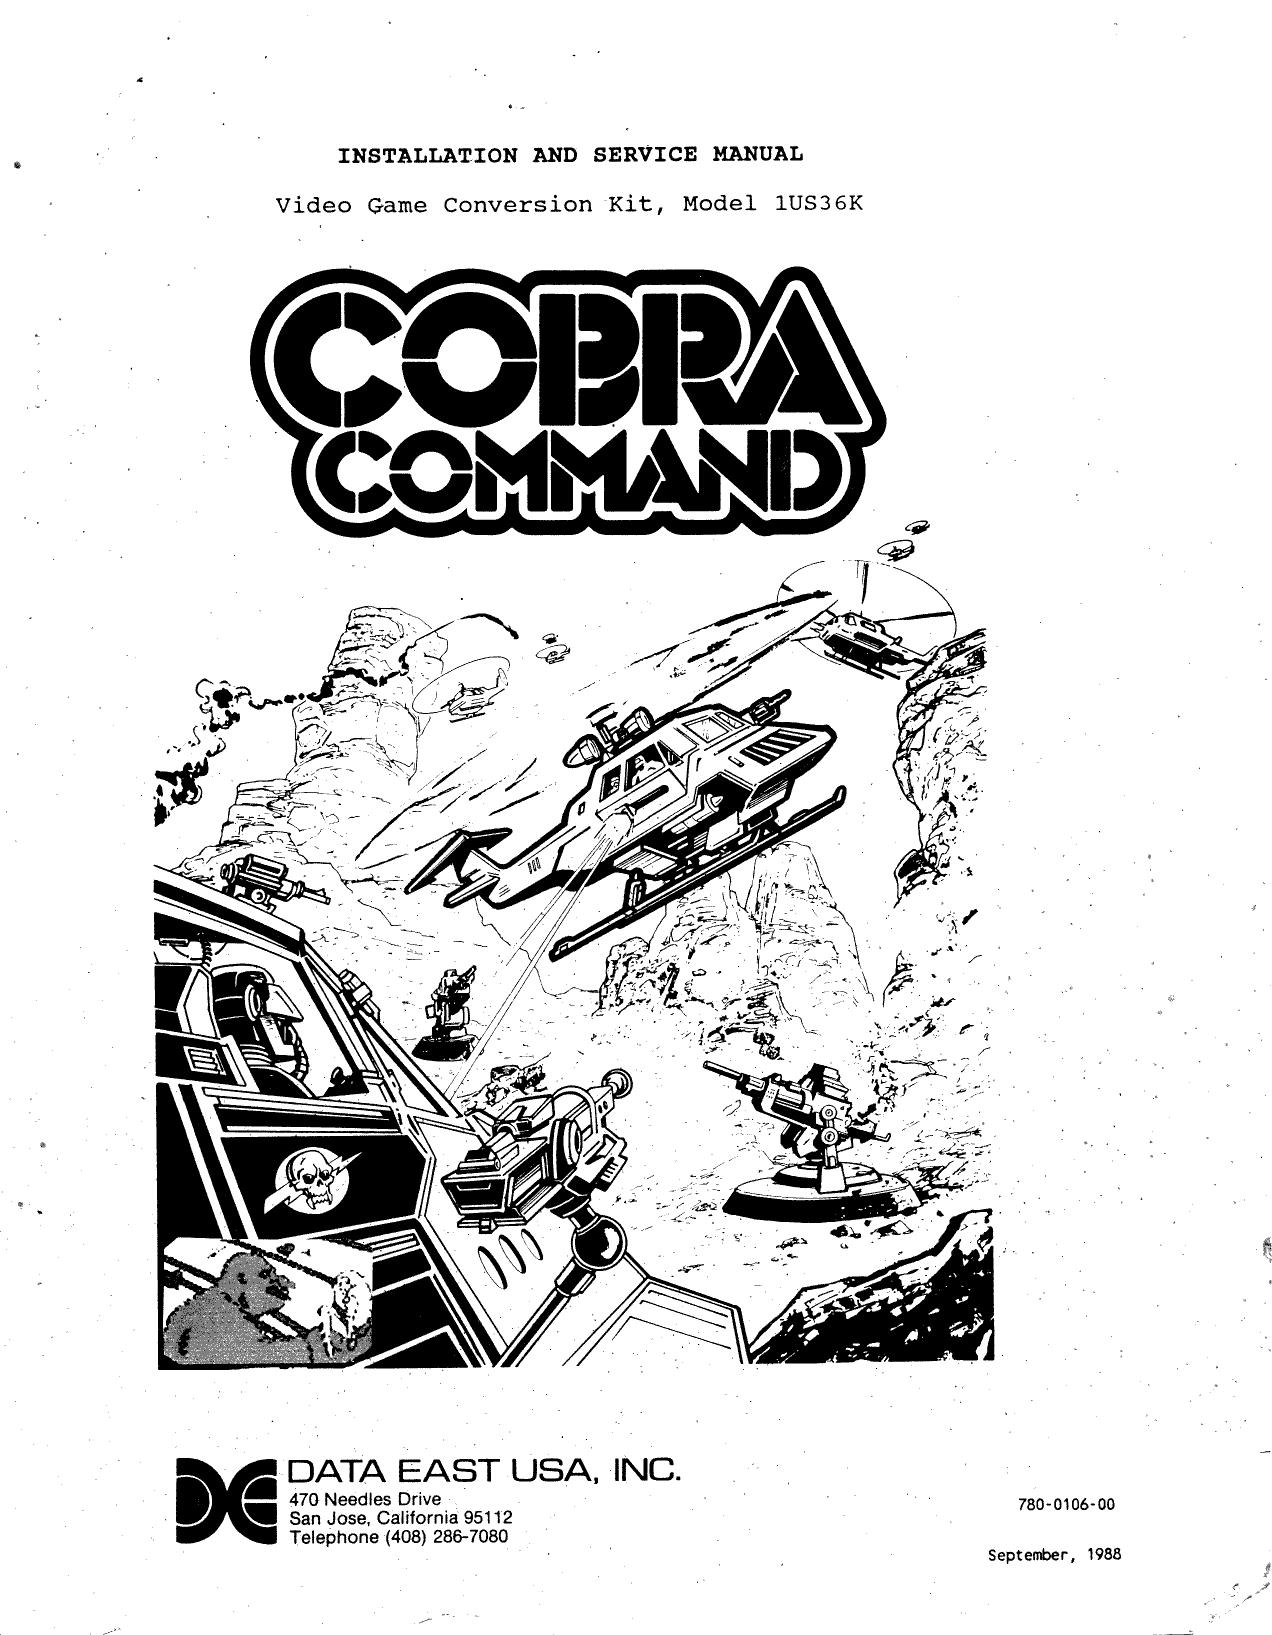 CobraCommand Manual